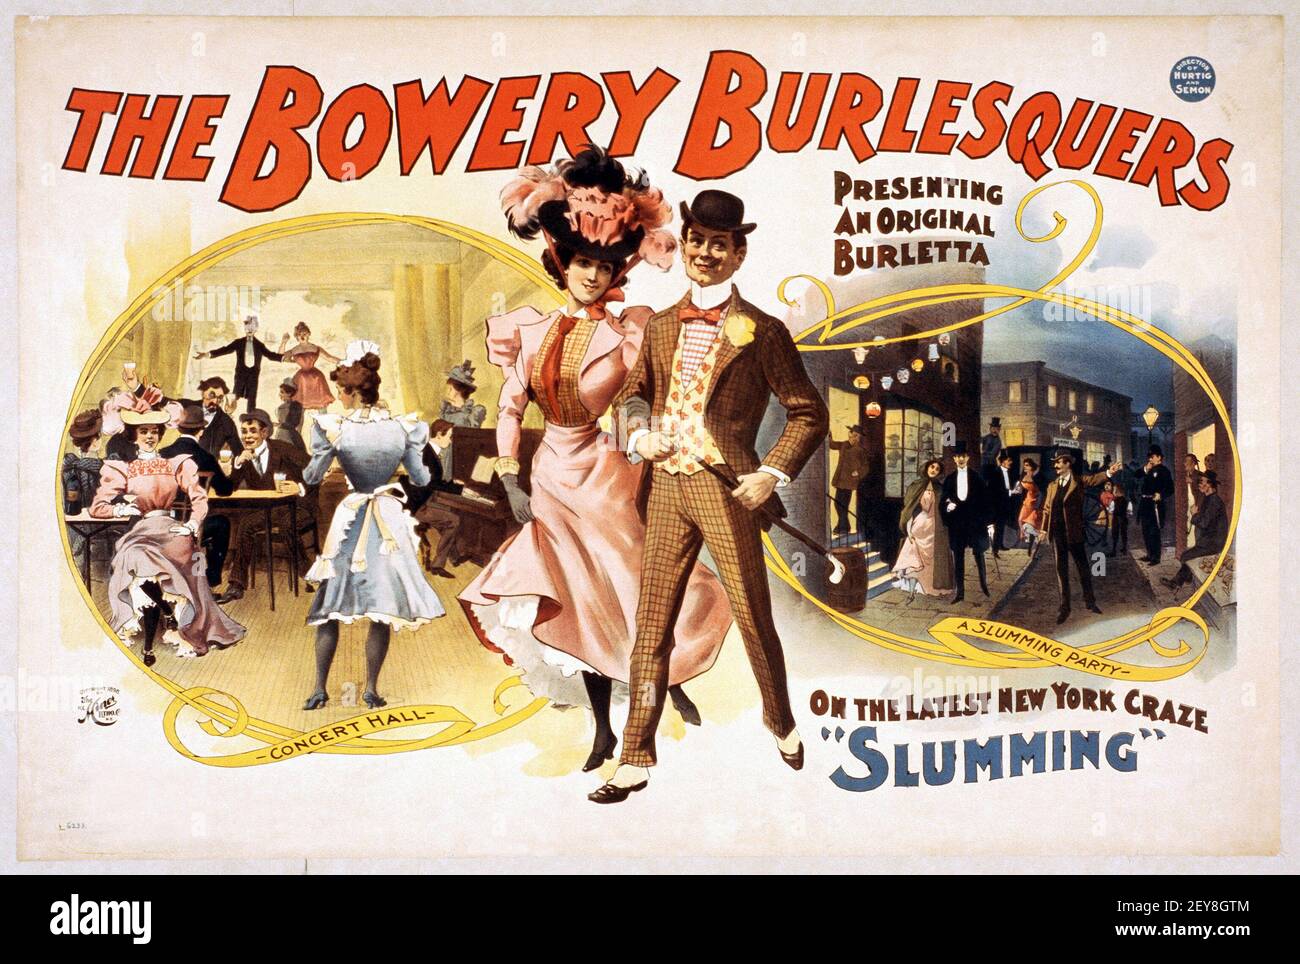 Bowery Burlesquers. Präsentiert eine originelle Burletta. Auf dem letzten New York Craze 'Schlumming'. Alter und Vintage-Stil. Stockfoto